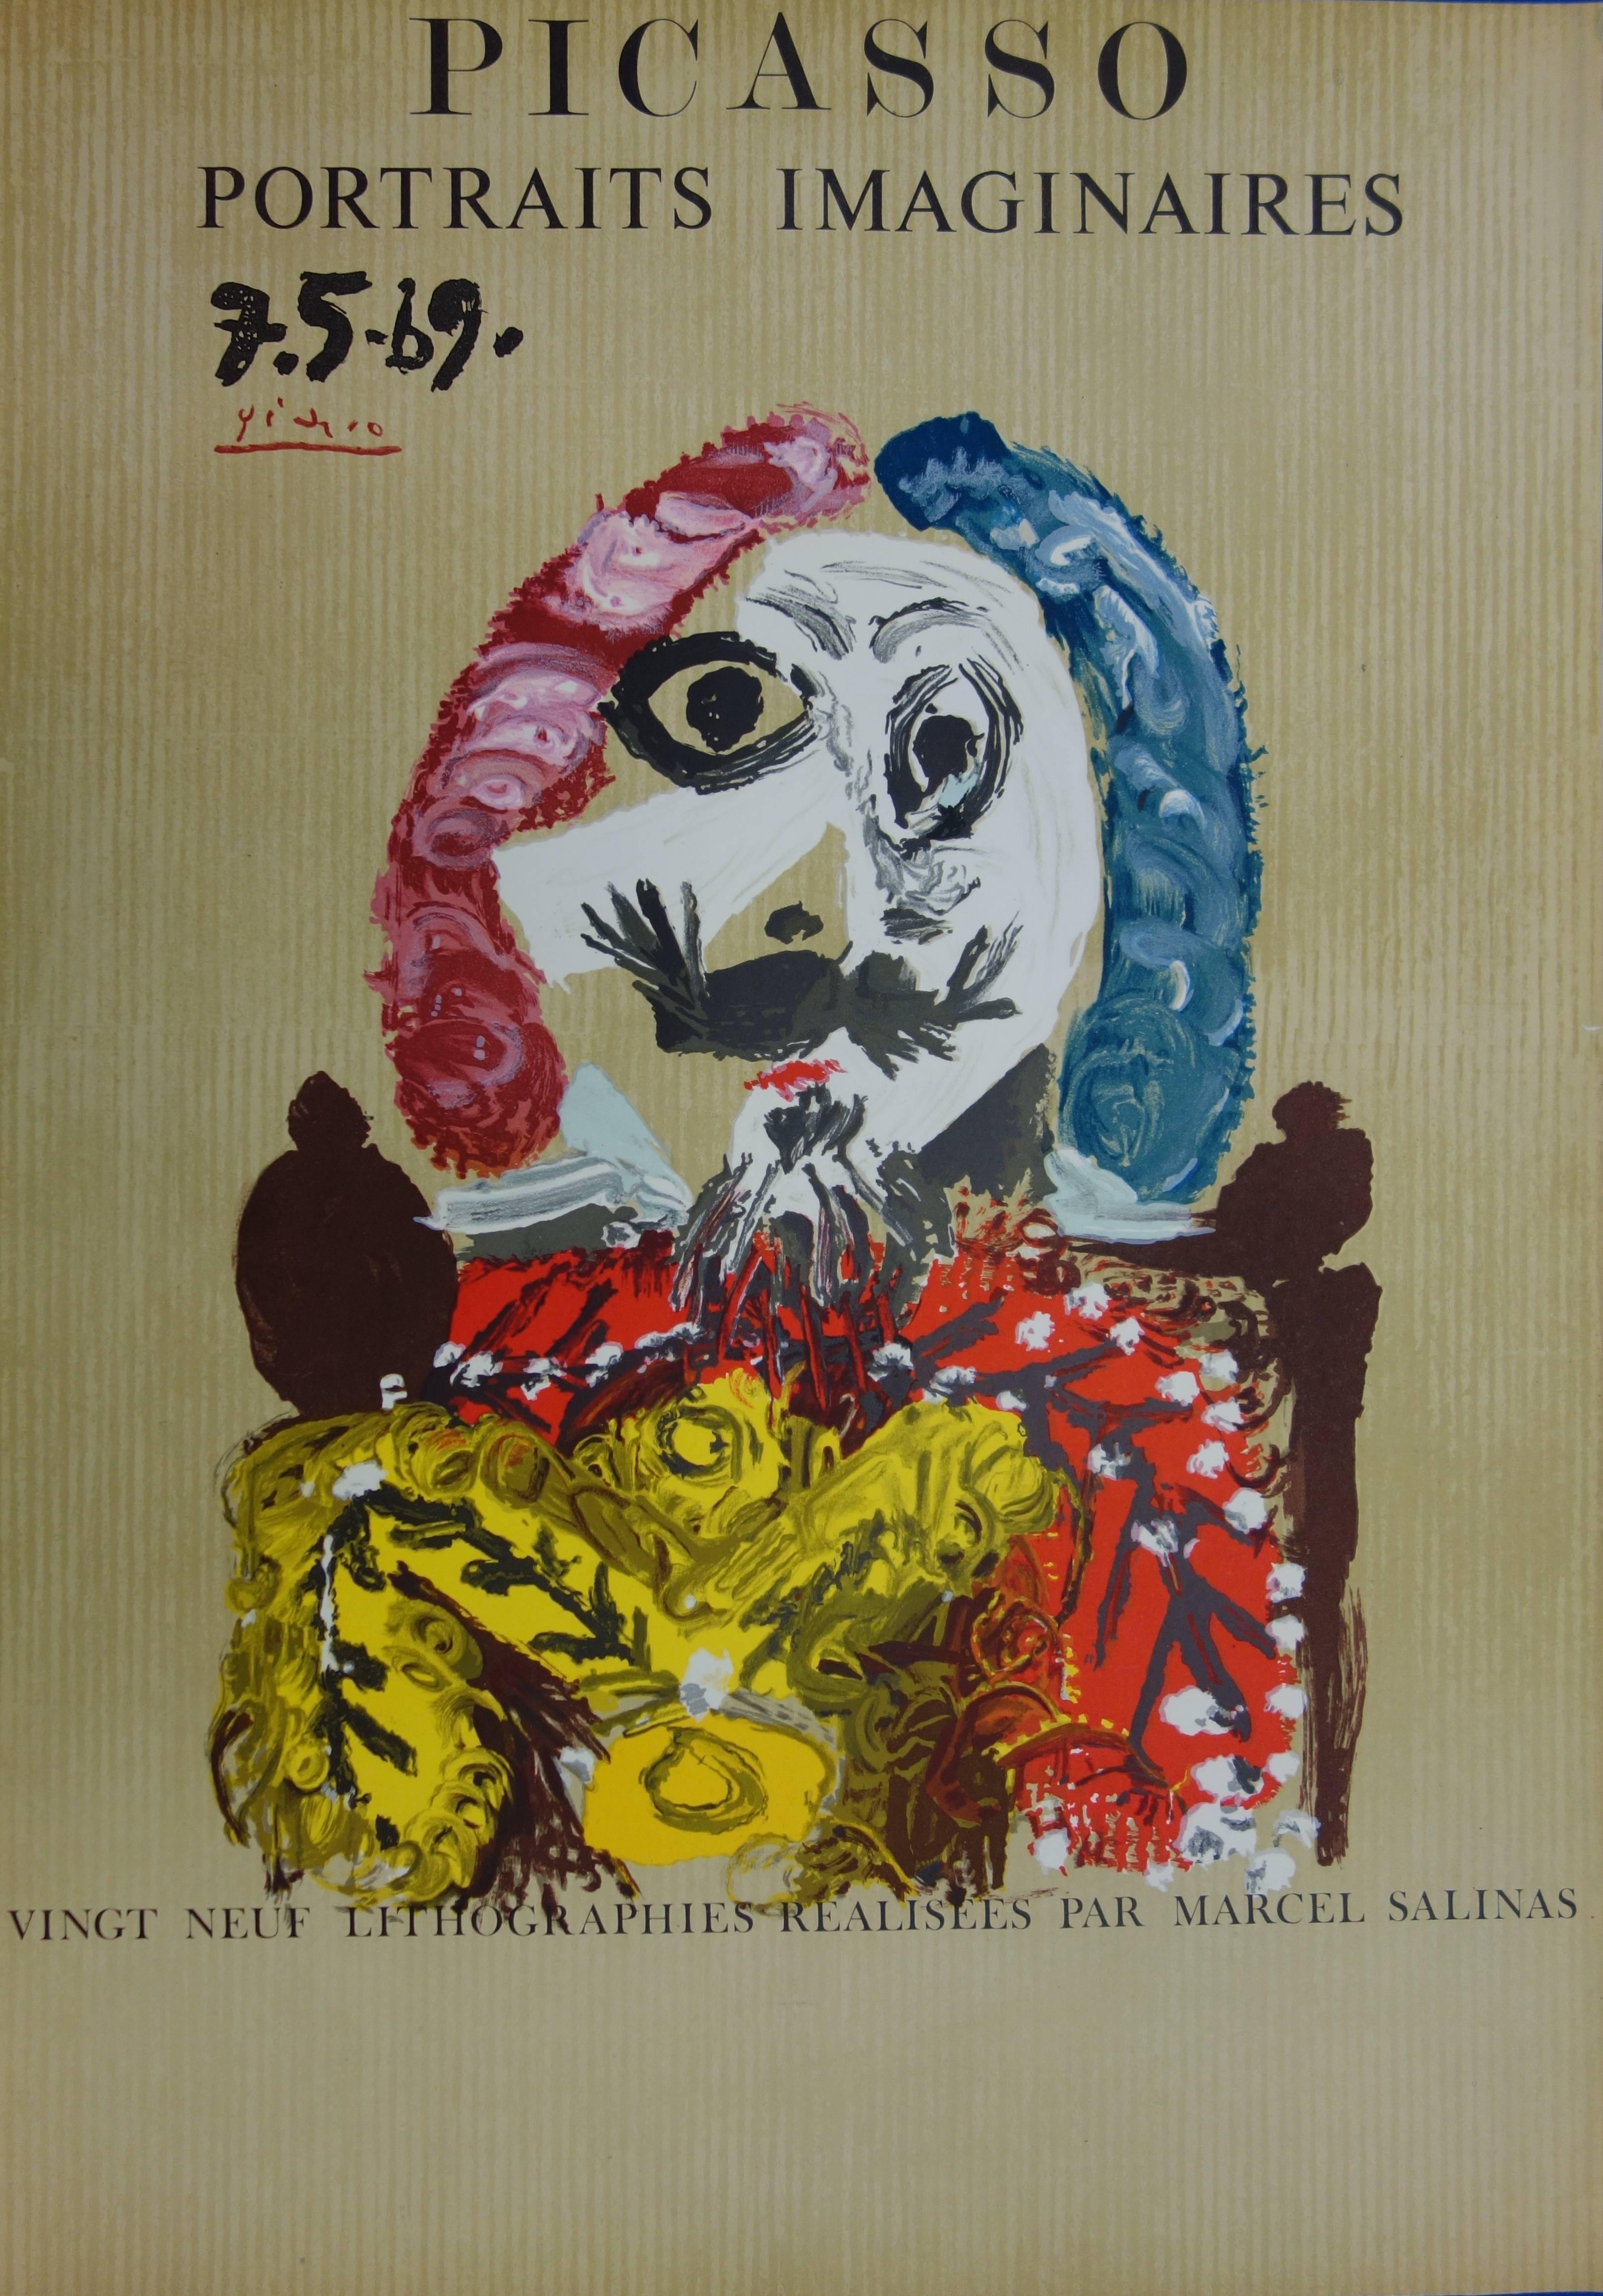 (after) Pablo Picasso Portrait Print - Imaginary Portraits : Elegant Rich Man - Lithograph - 1971